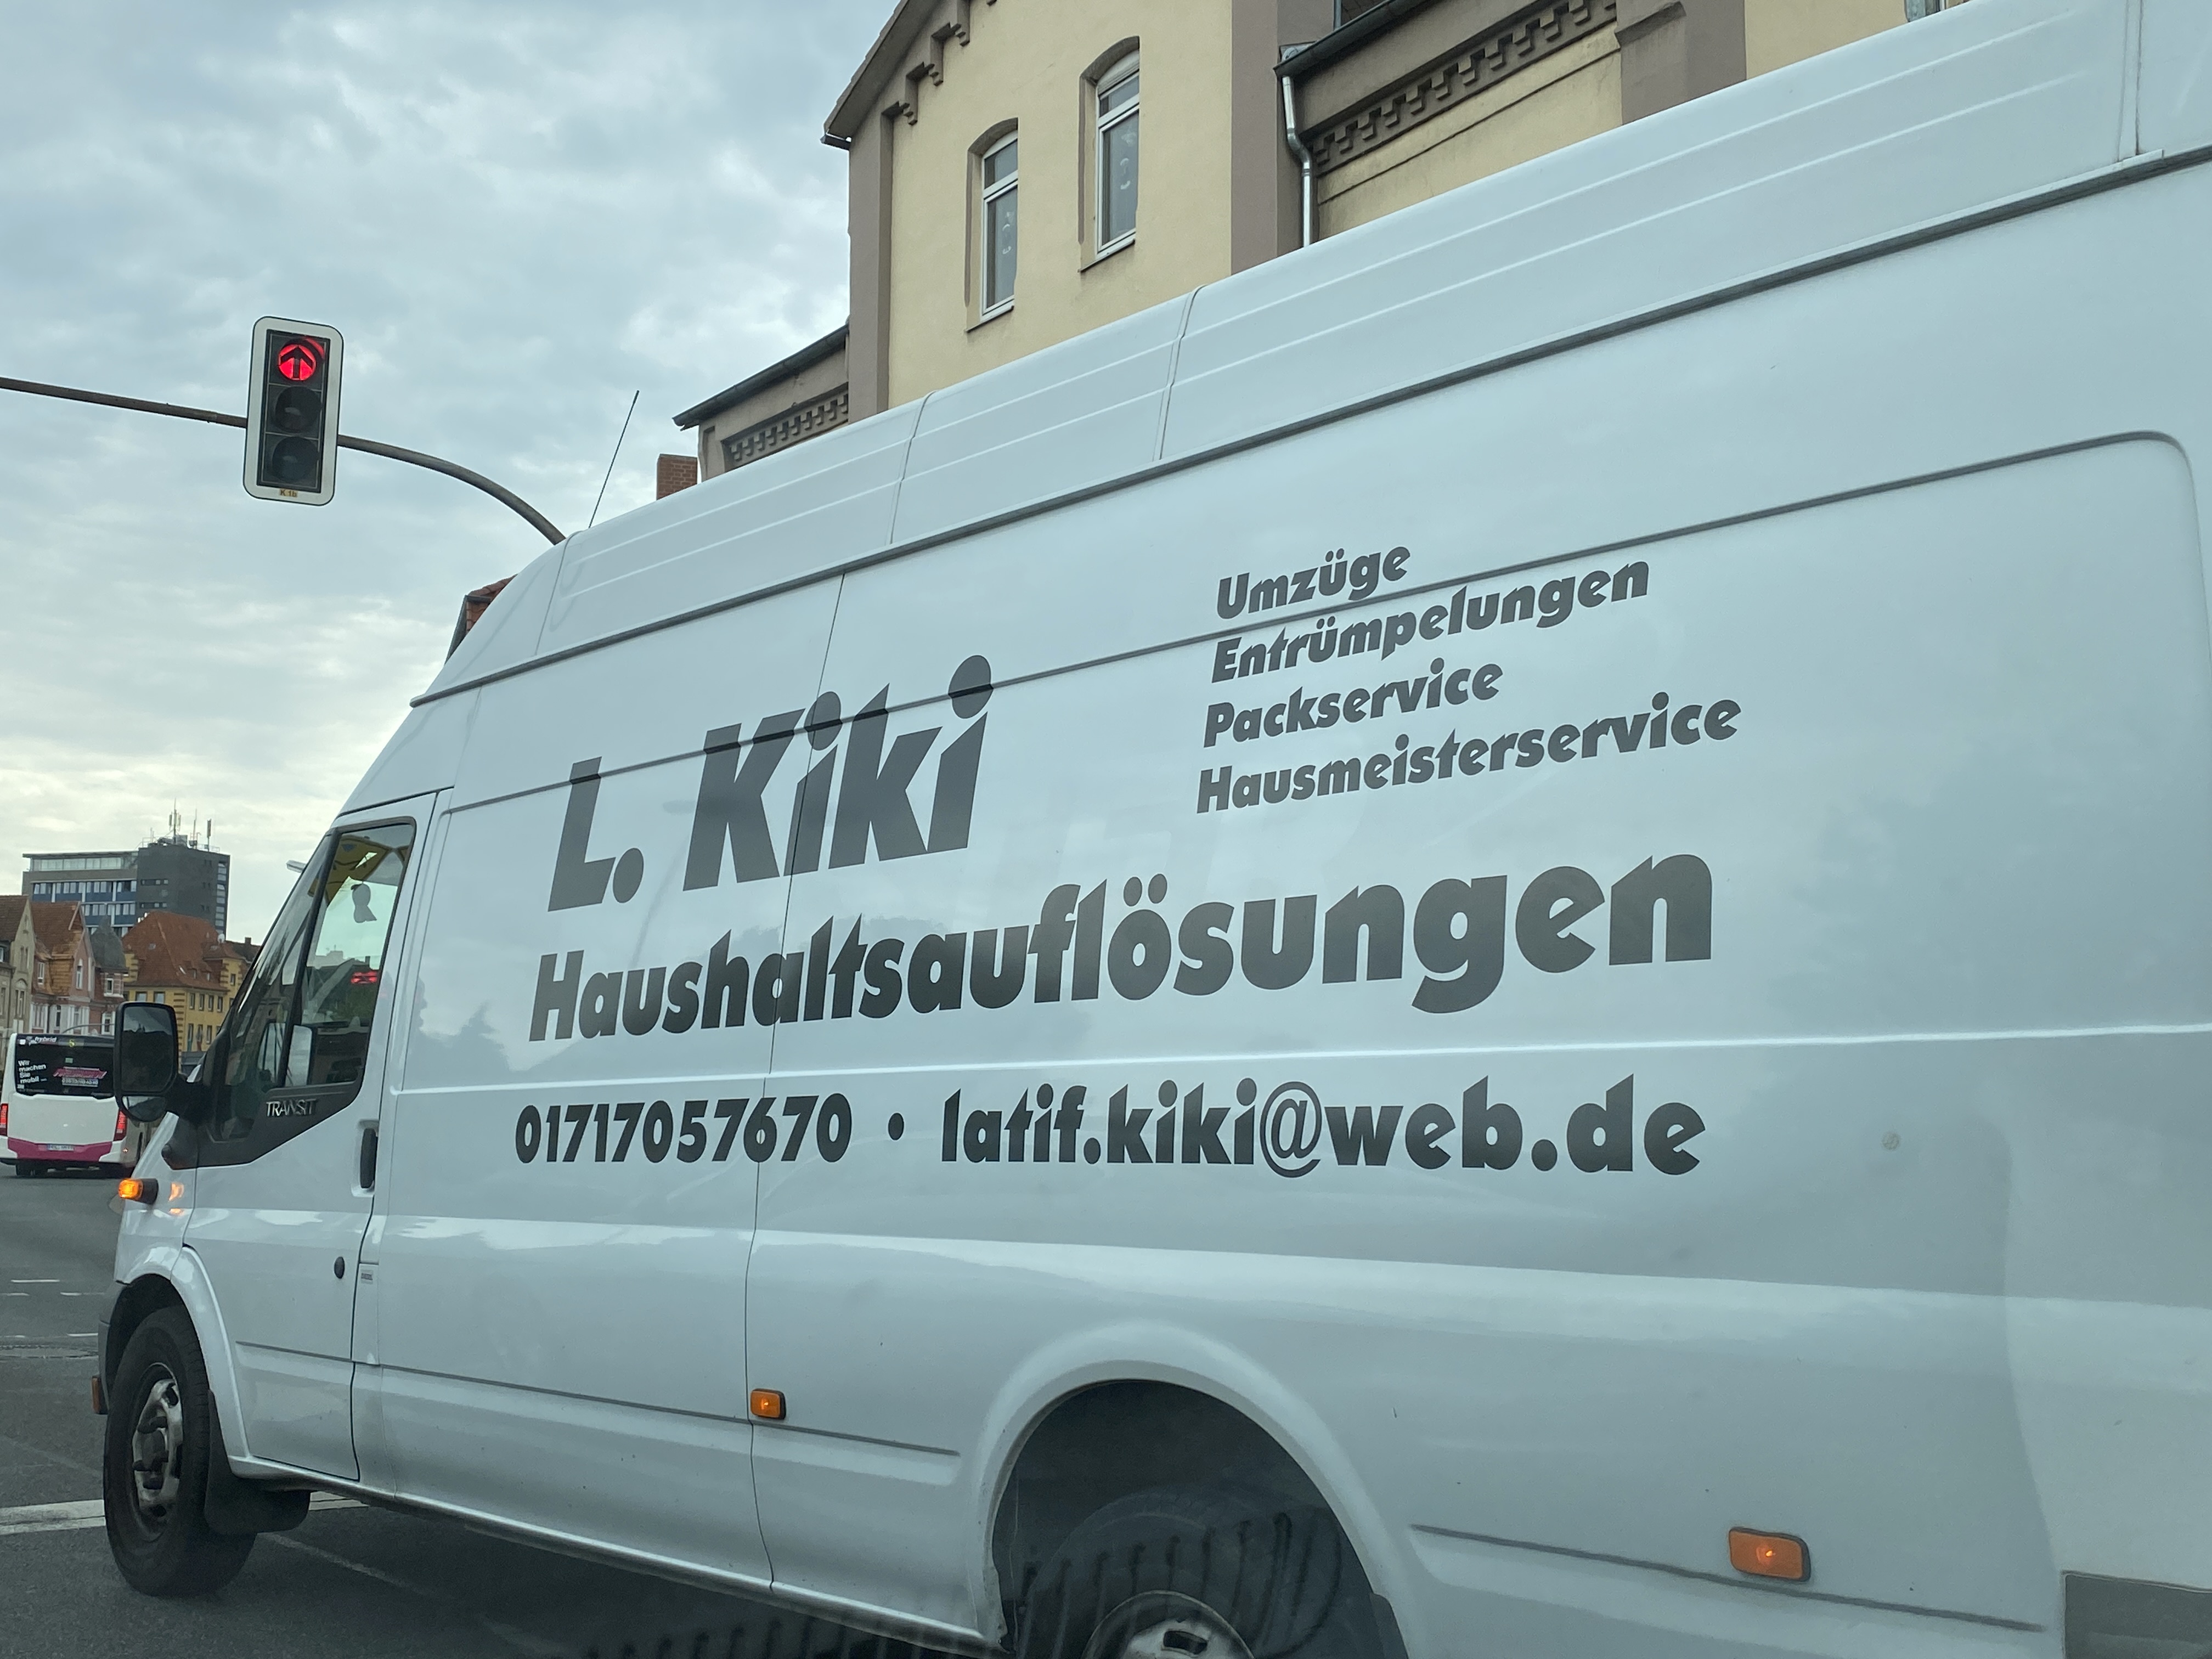 Bild 1 L. Kiki Haushaltsauflösungen in Hessisch Oldendorf